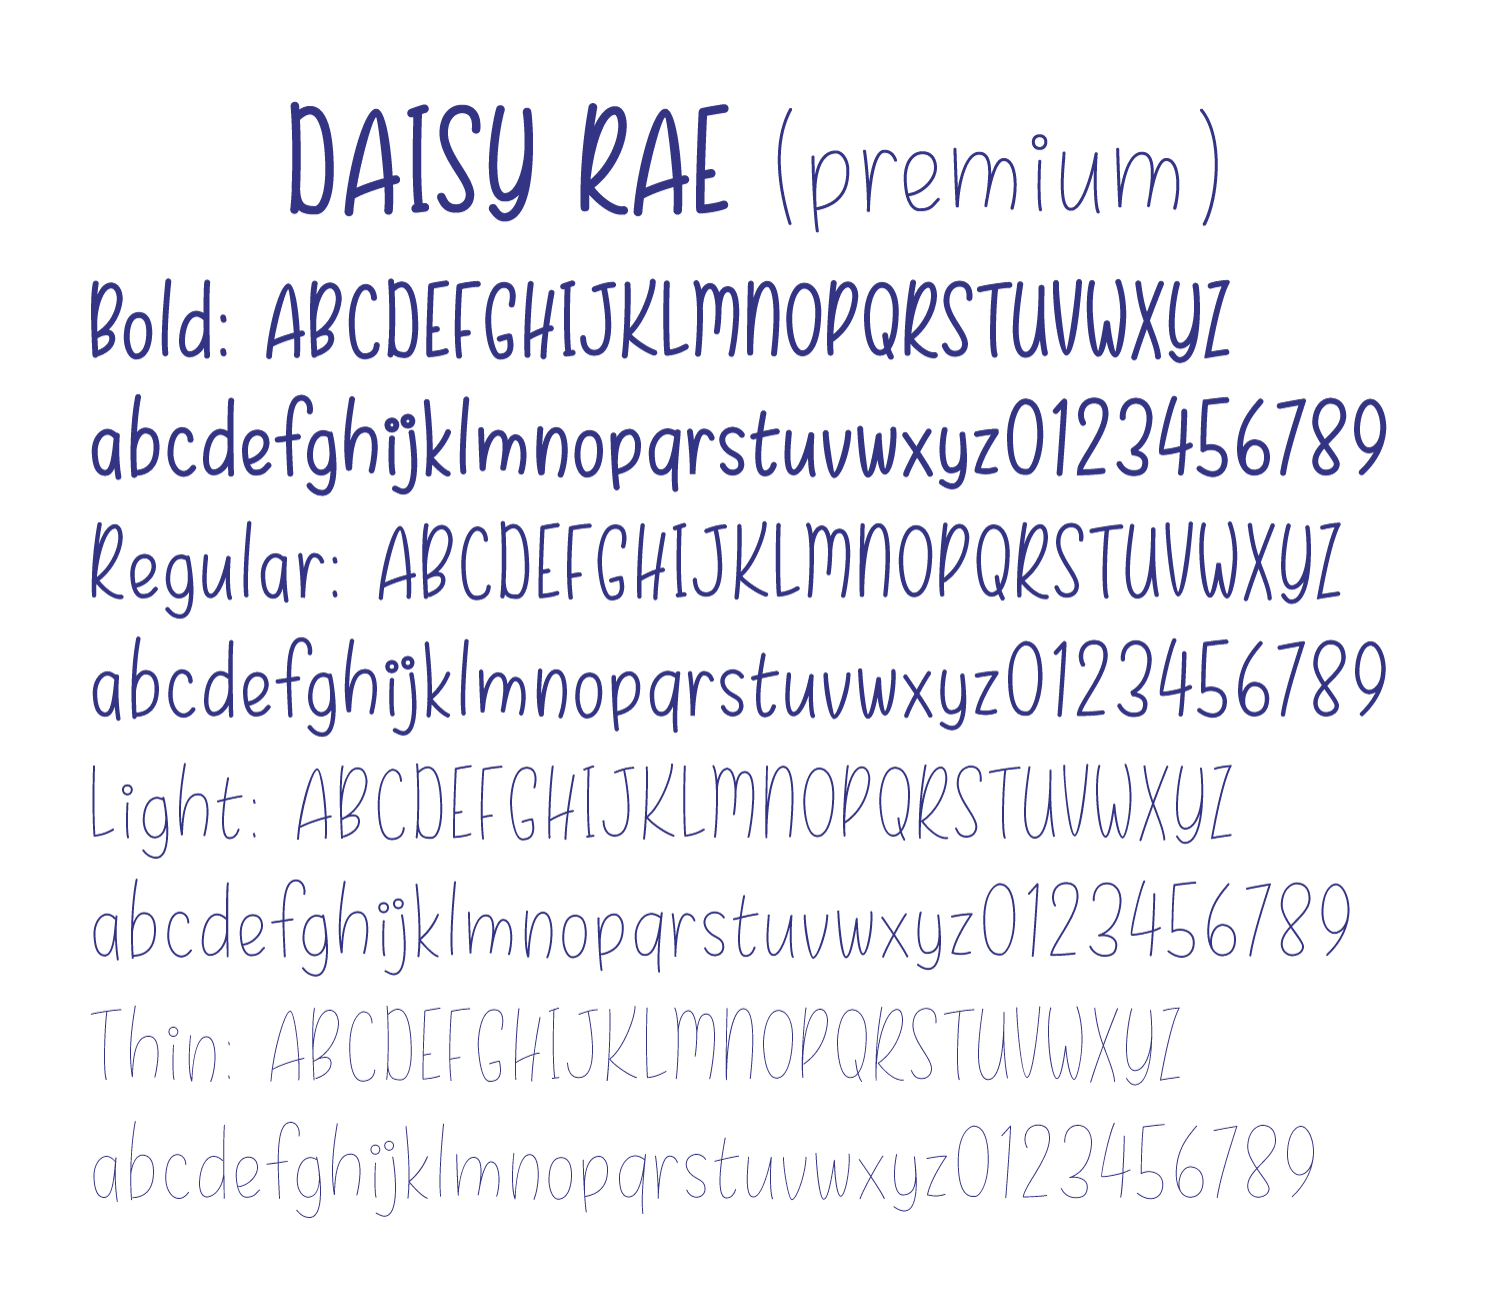 Daisy rae